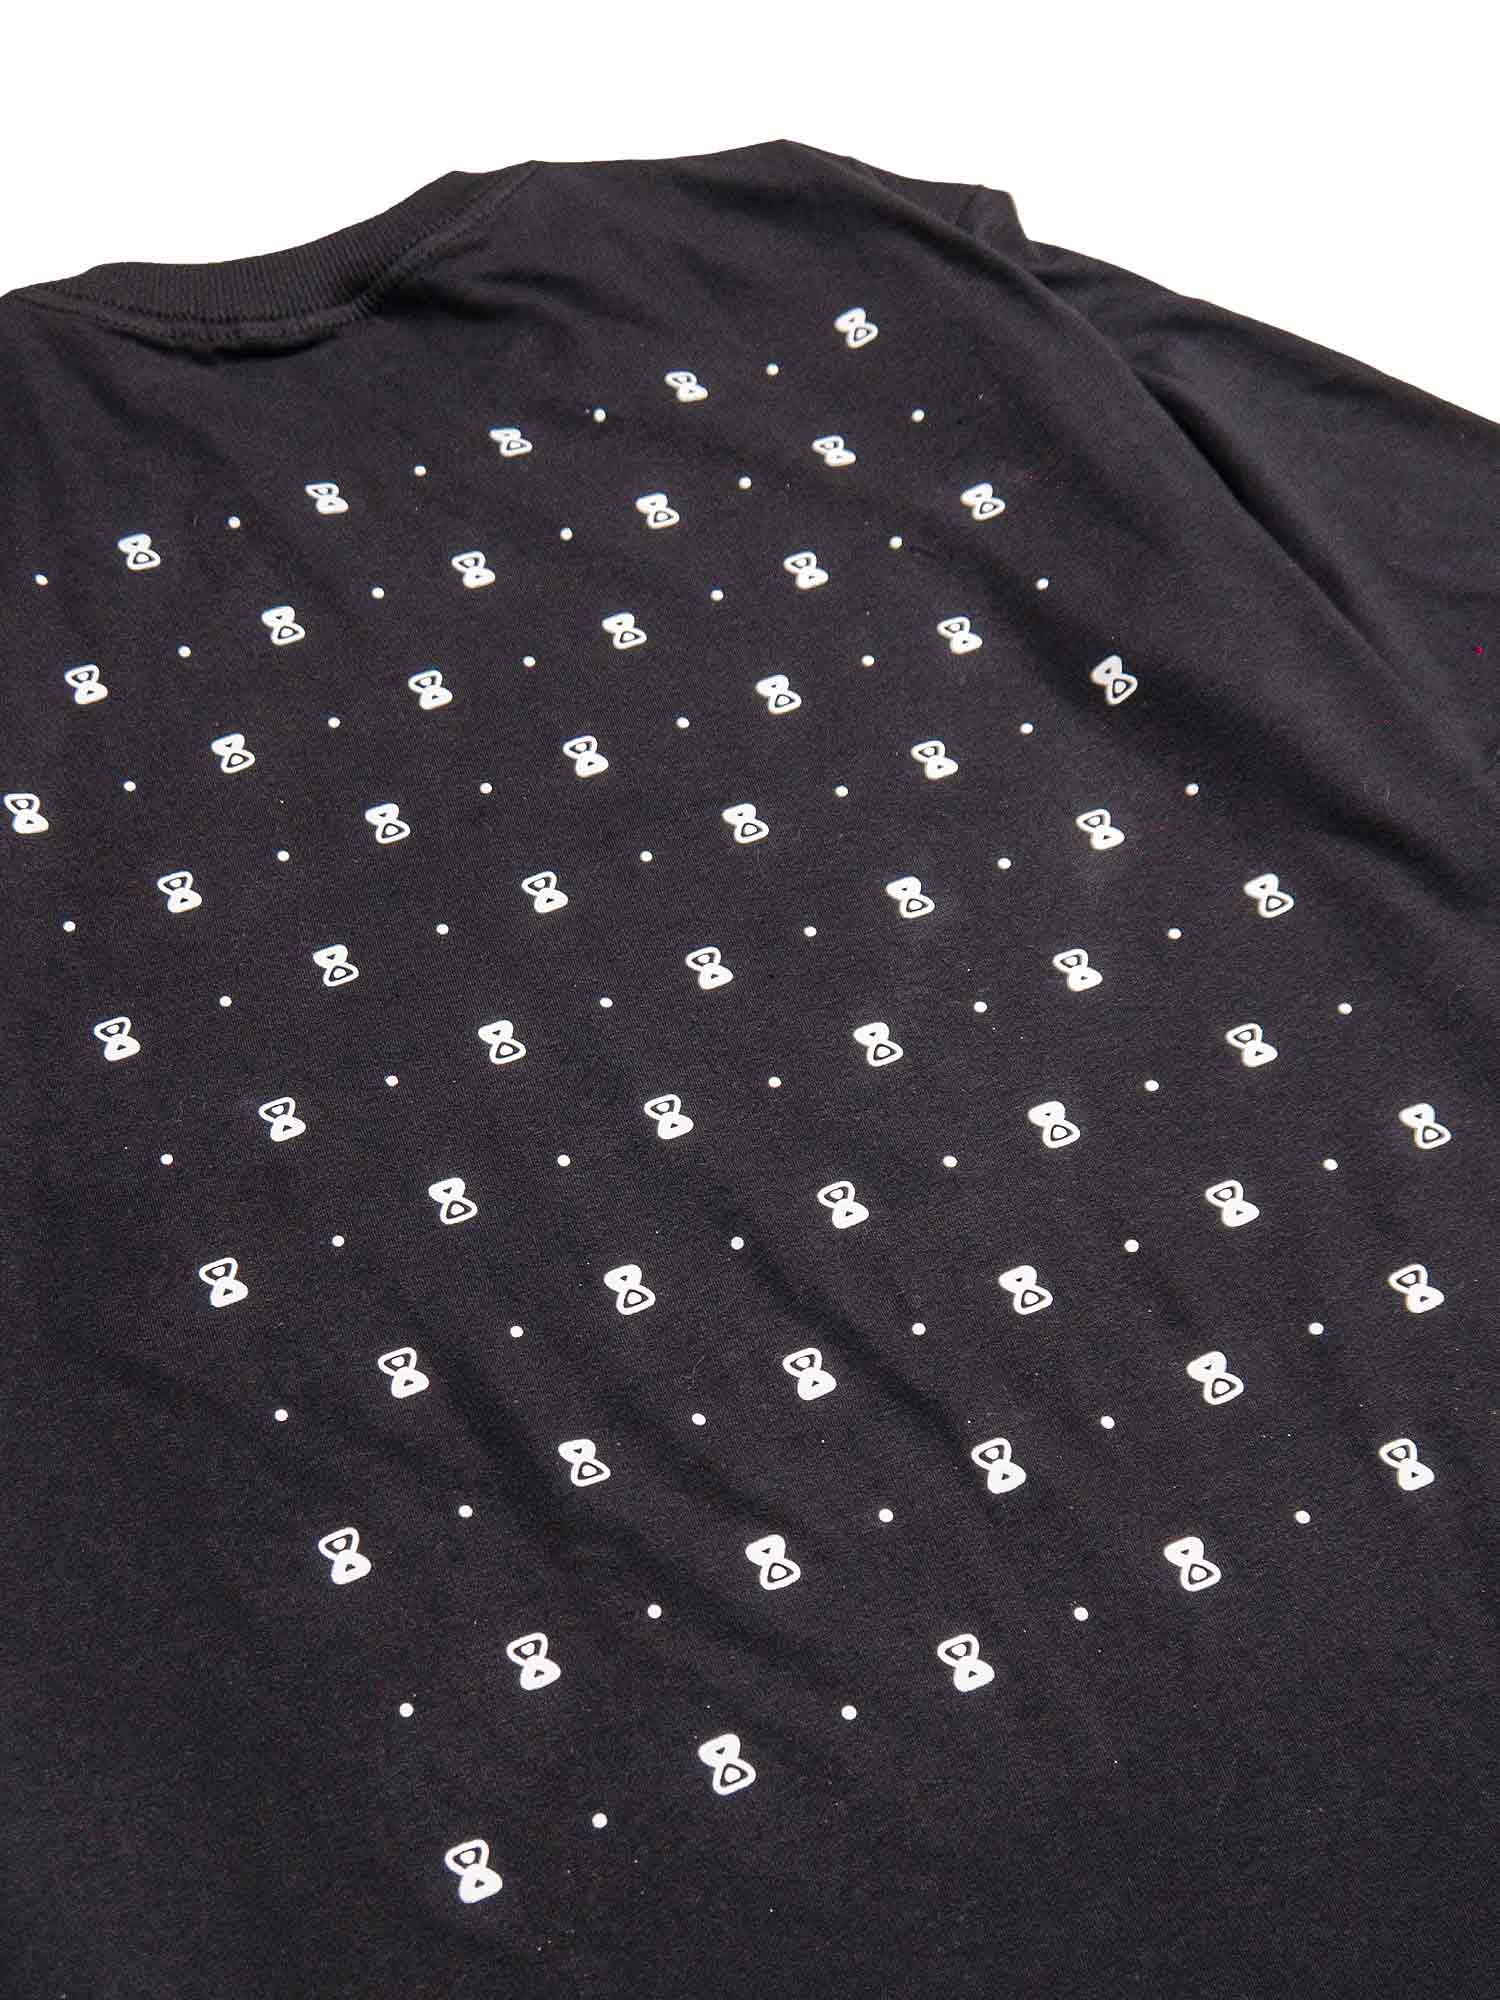 Camiseta-Future-Texturized-Preta-Costas-Close